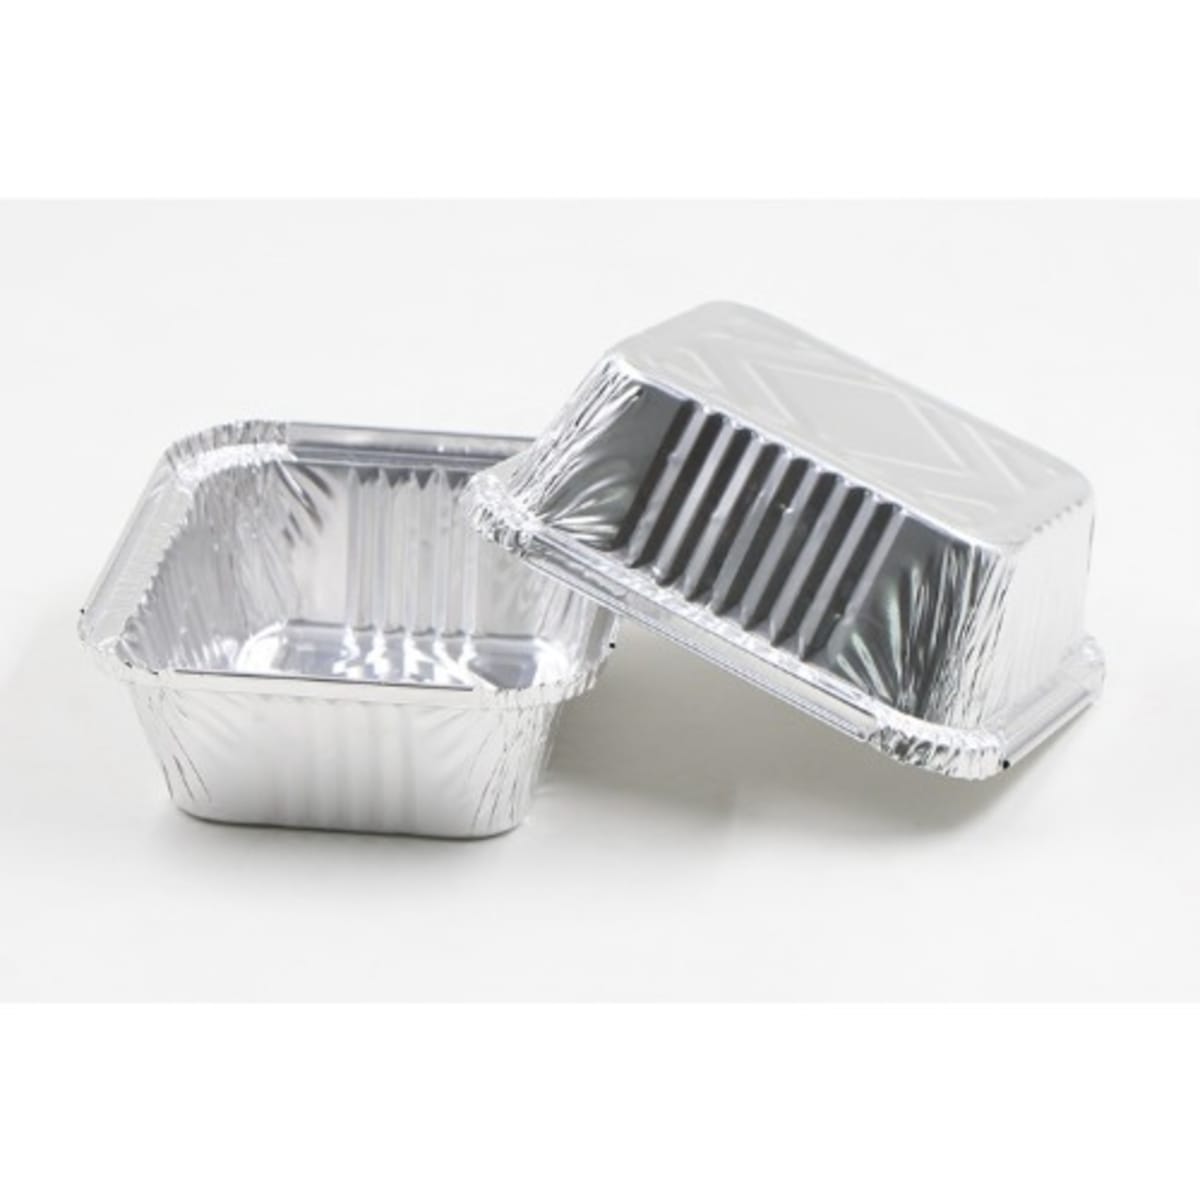 Silver Aluminium Aluminum Square Cake Mold Set